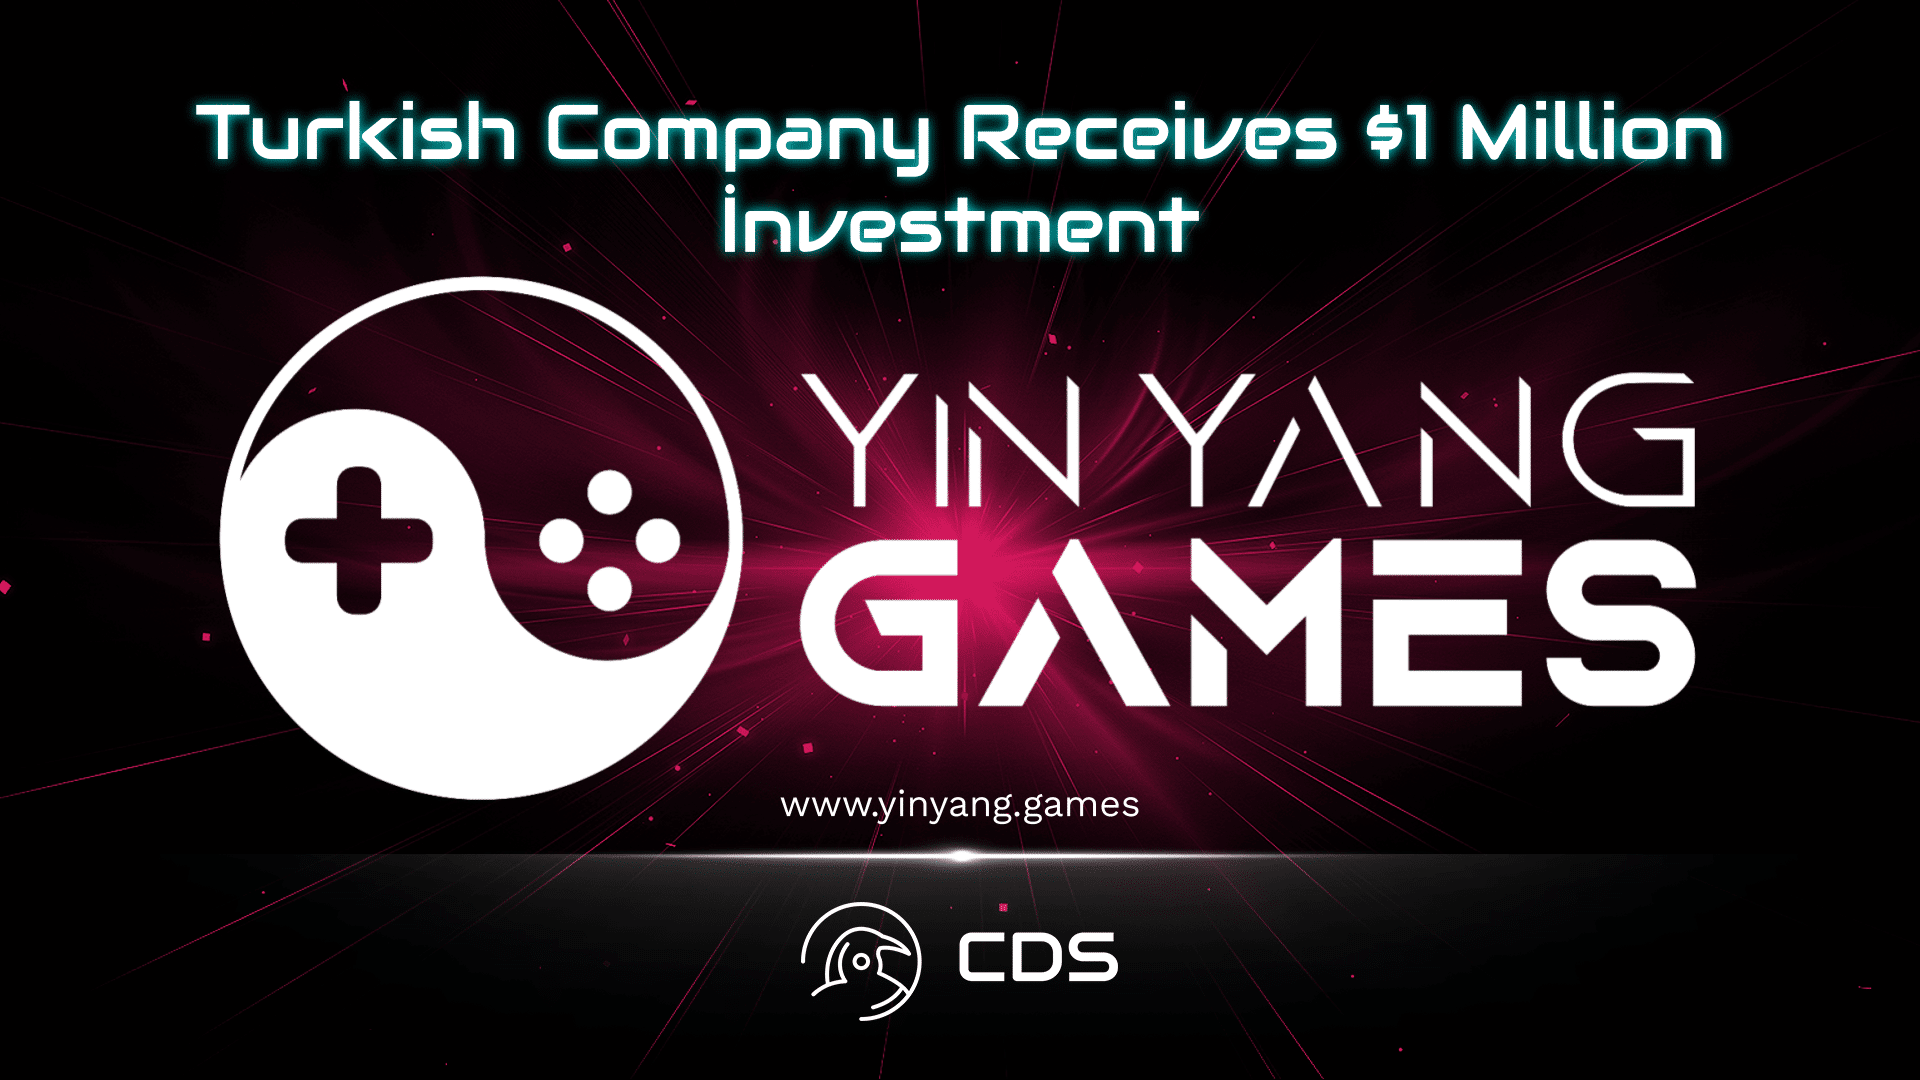 Yinyang Games Receives $1 Million